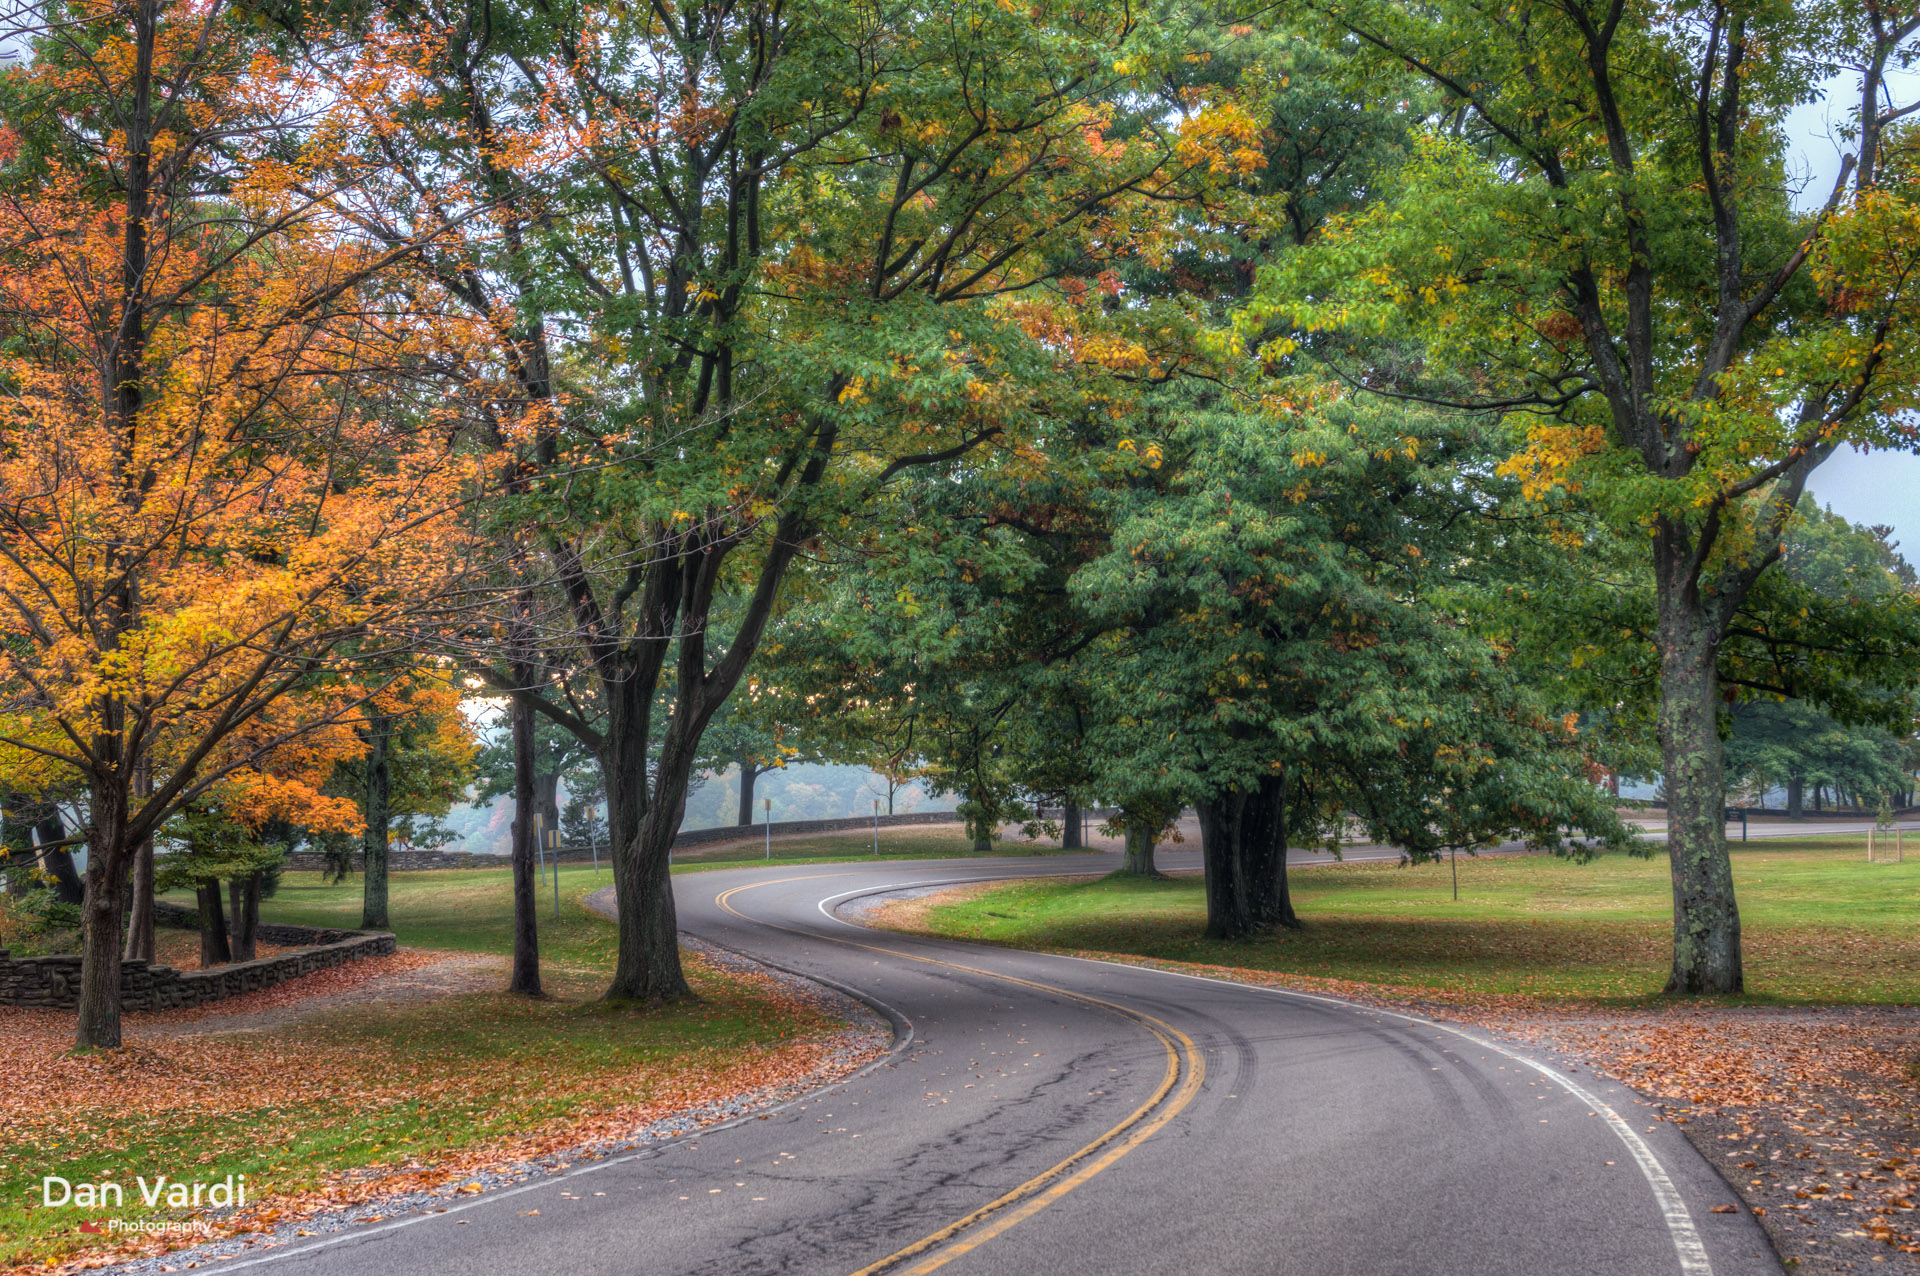 Winding Autumn Road